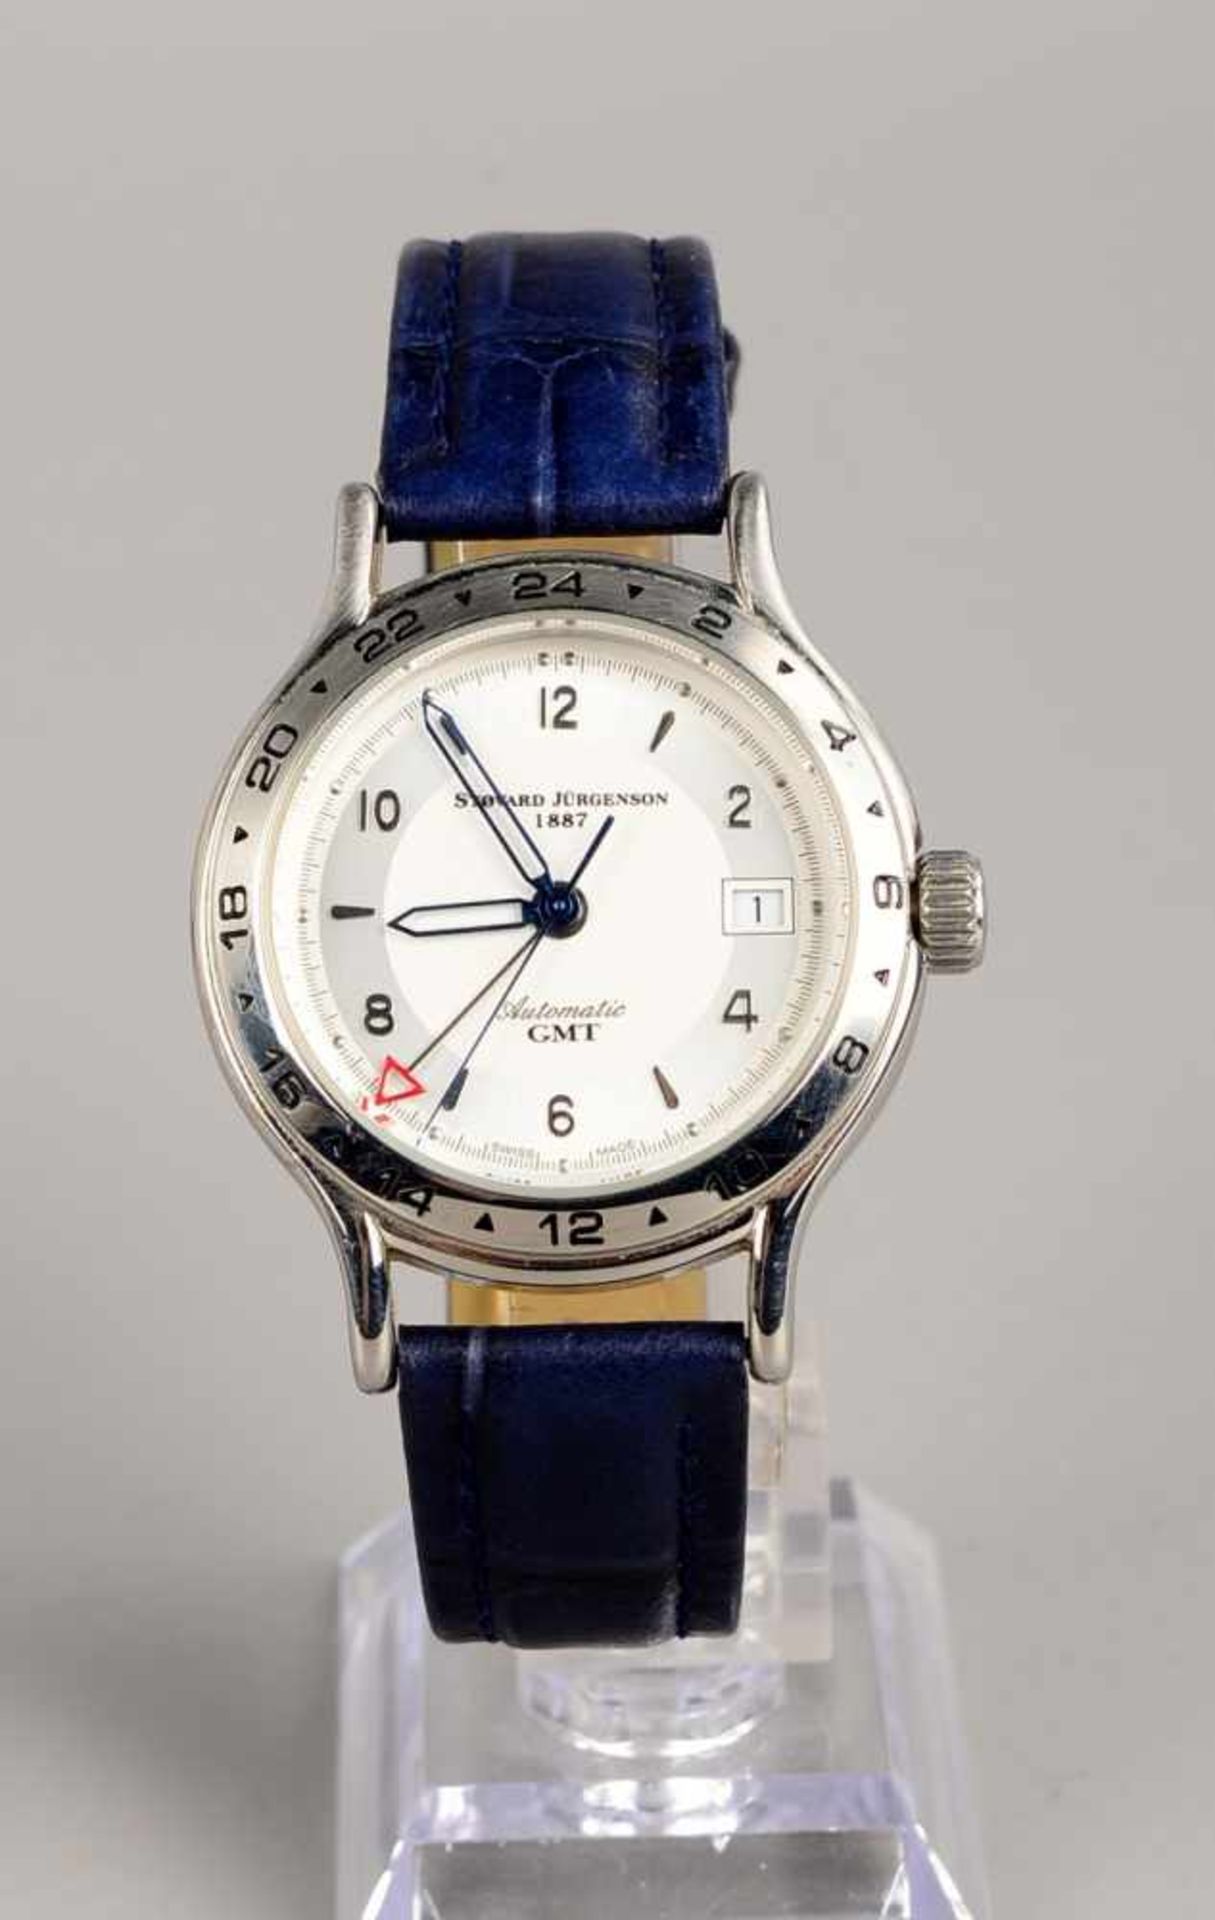 Herren-Armbanduhr, Stovard Jürgenson, Automatic, läuft; an blauem Leder-Armband, im original Kasten